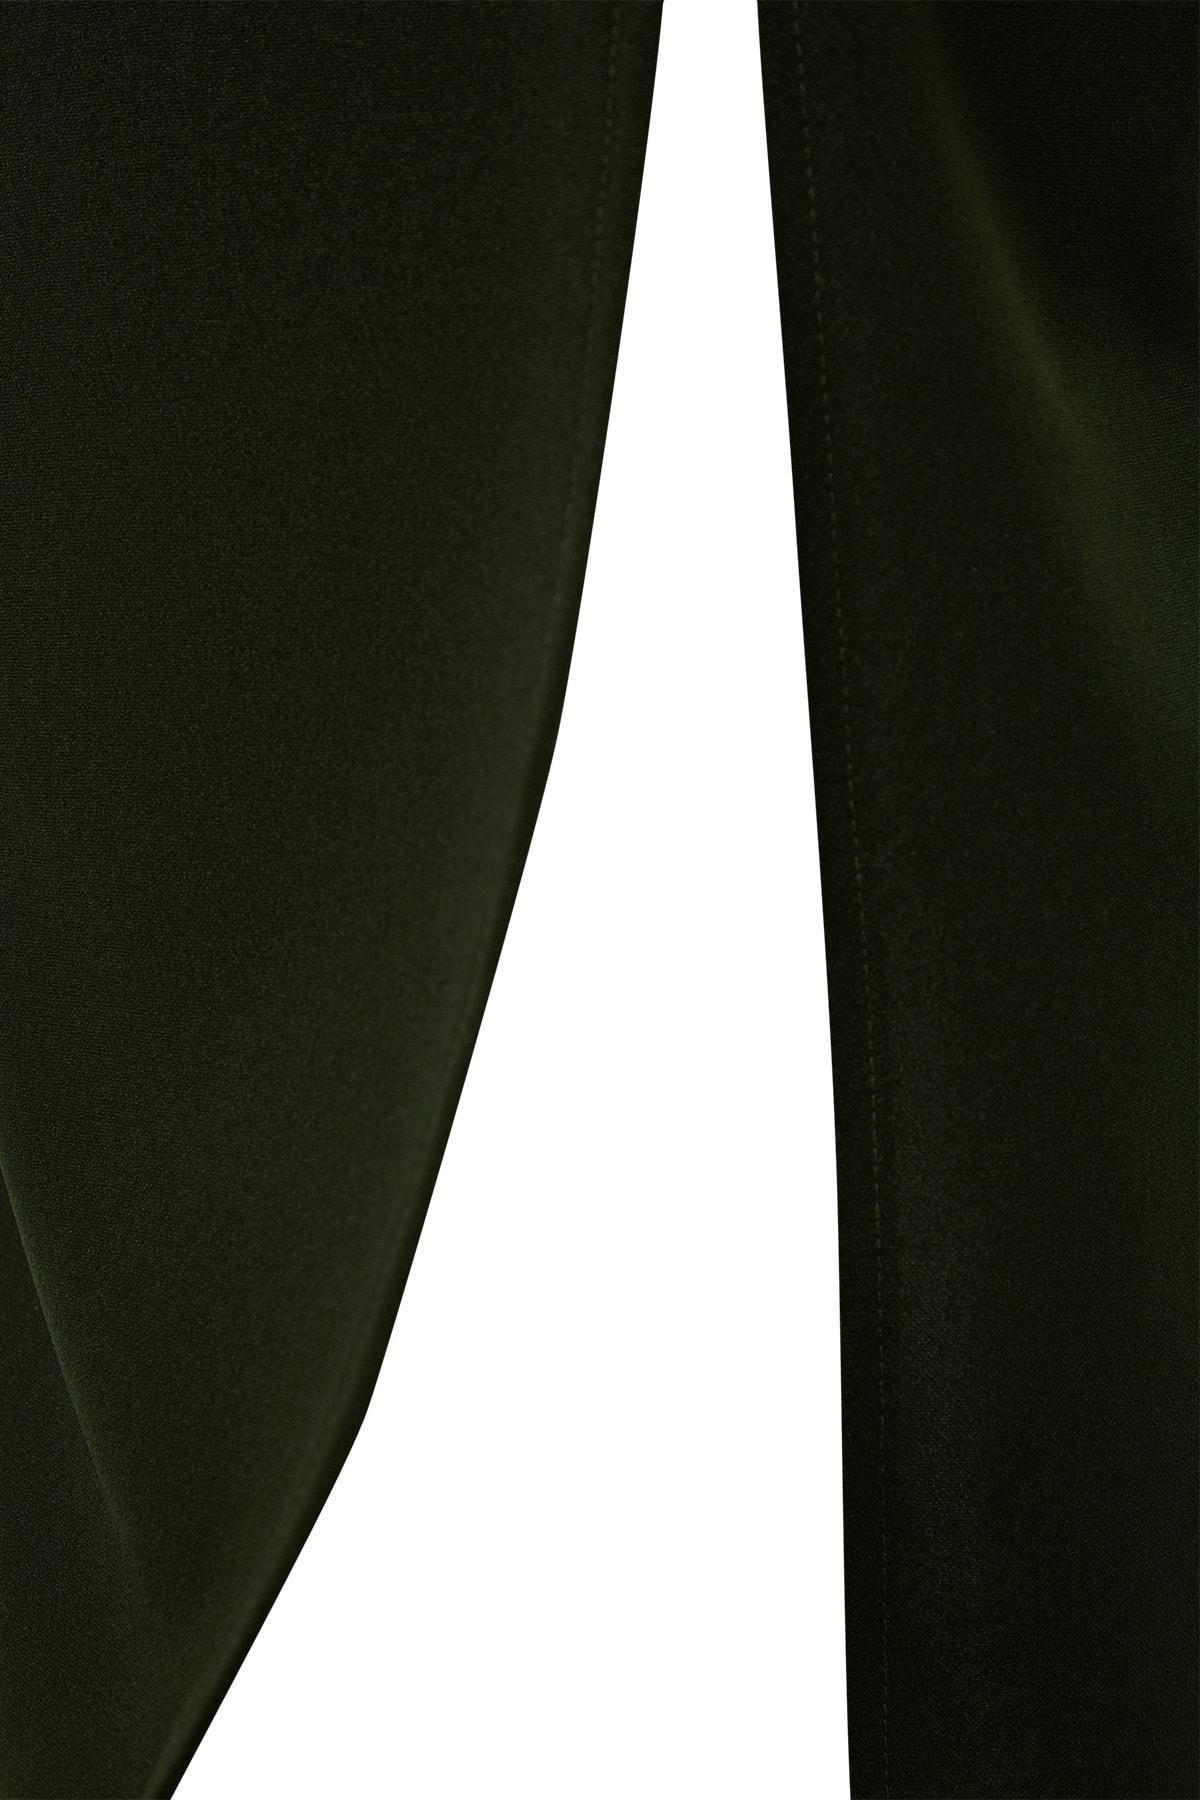 Trendyol - Khaki Slit High Waist Knitted Maxi Skirt